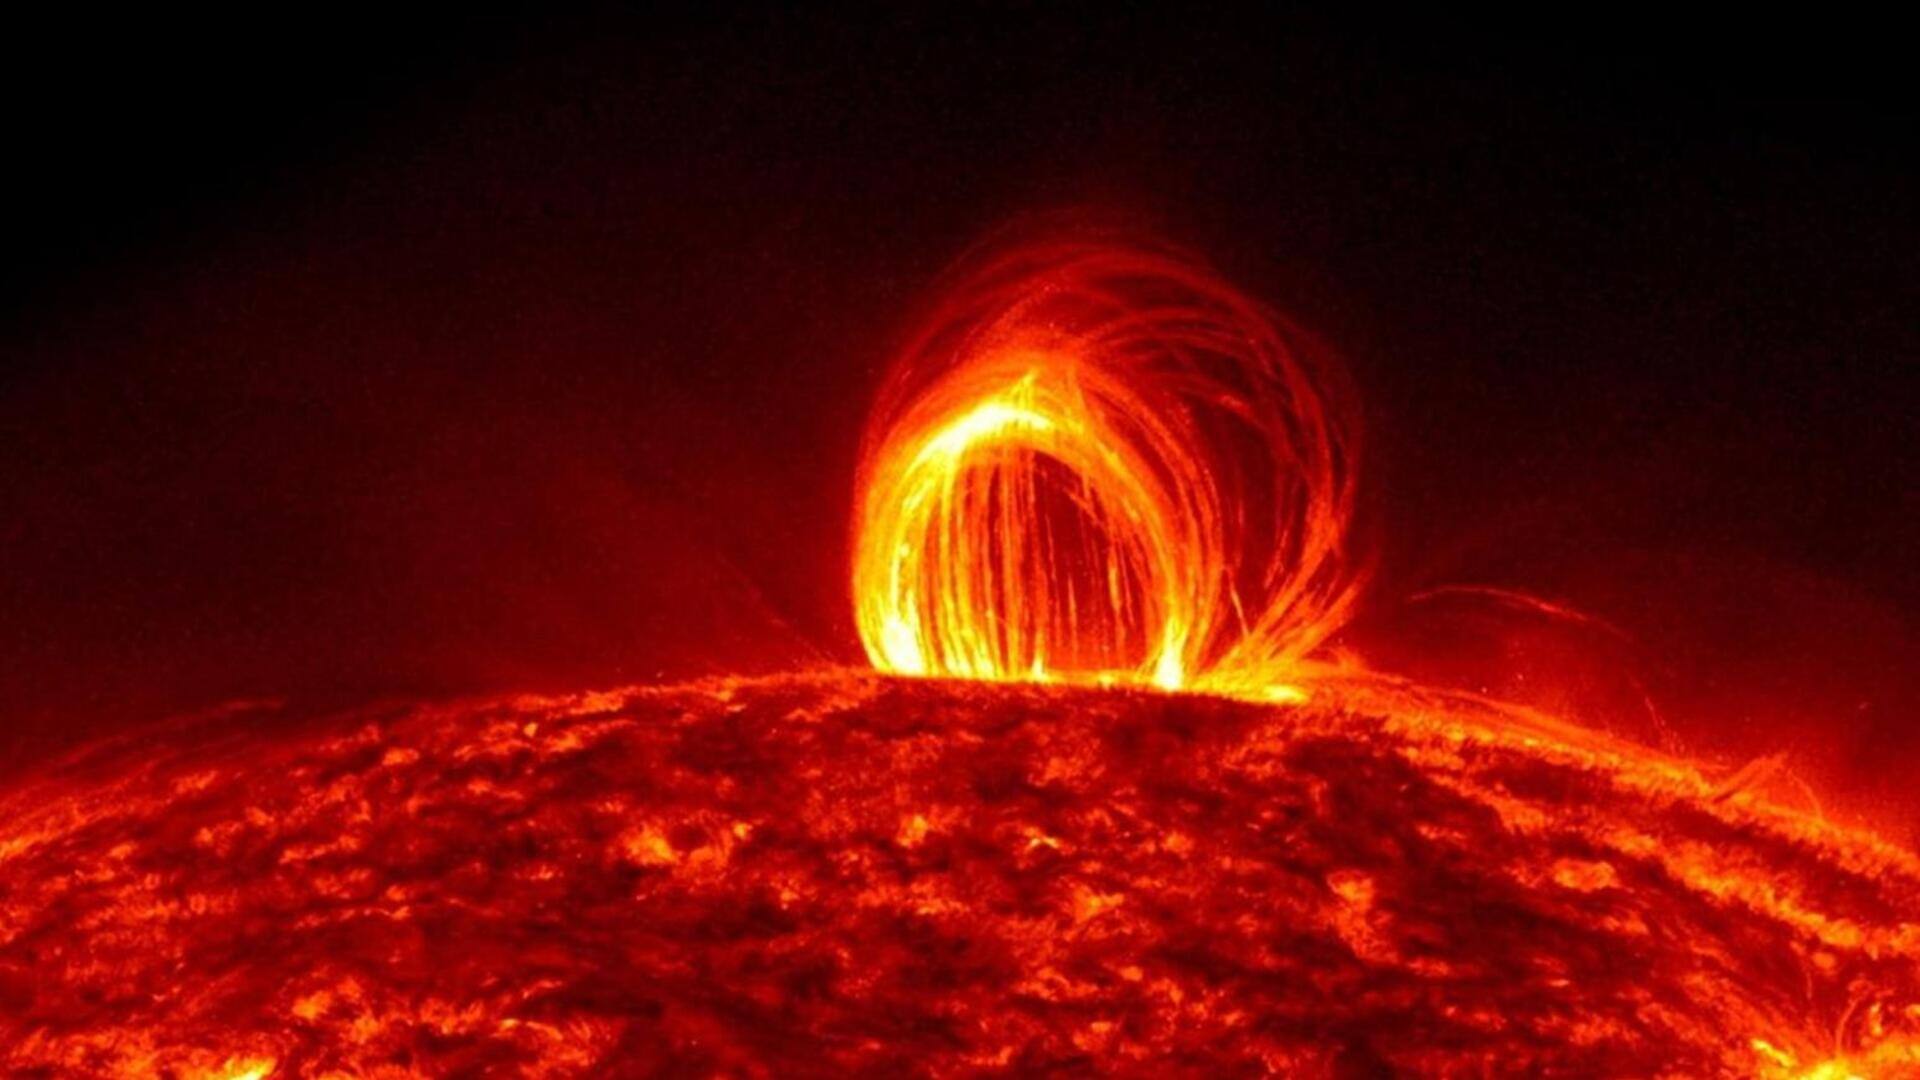 सनस्पॉट में विस्फोट के बाद M-क्लास सोलर फ्लेयर हुआ उत्पन्न, सौर तूफान का अलर्ट जारी